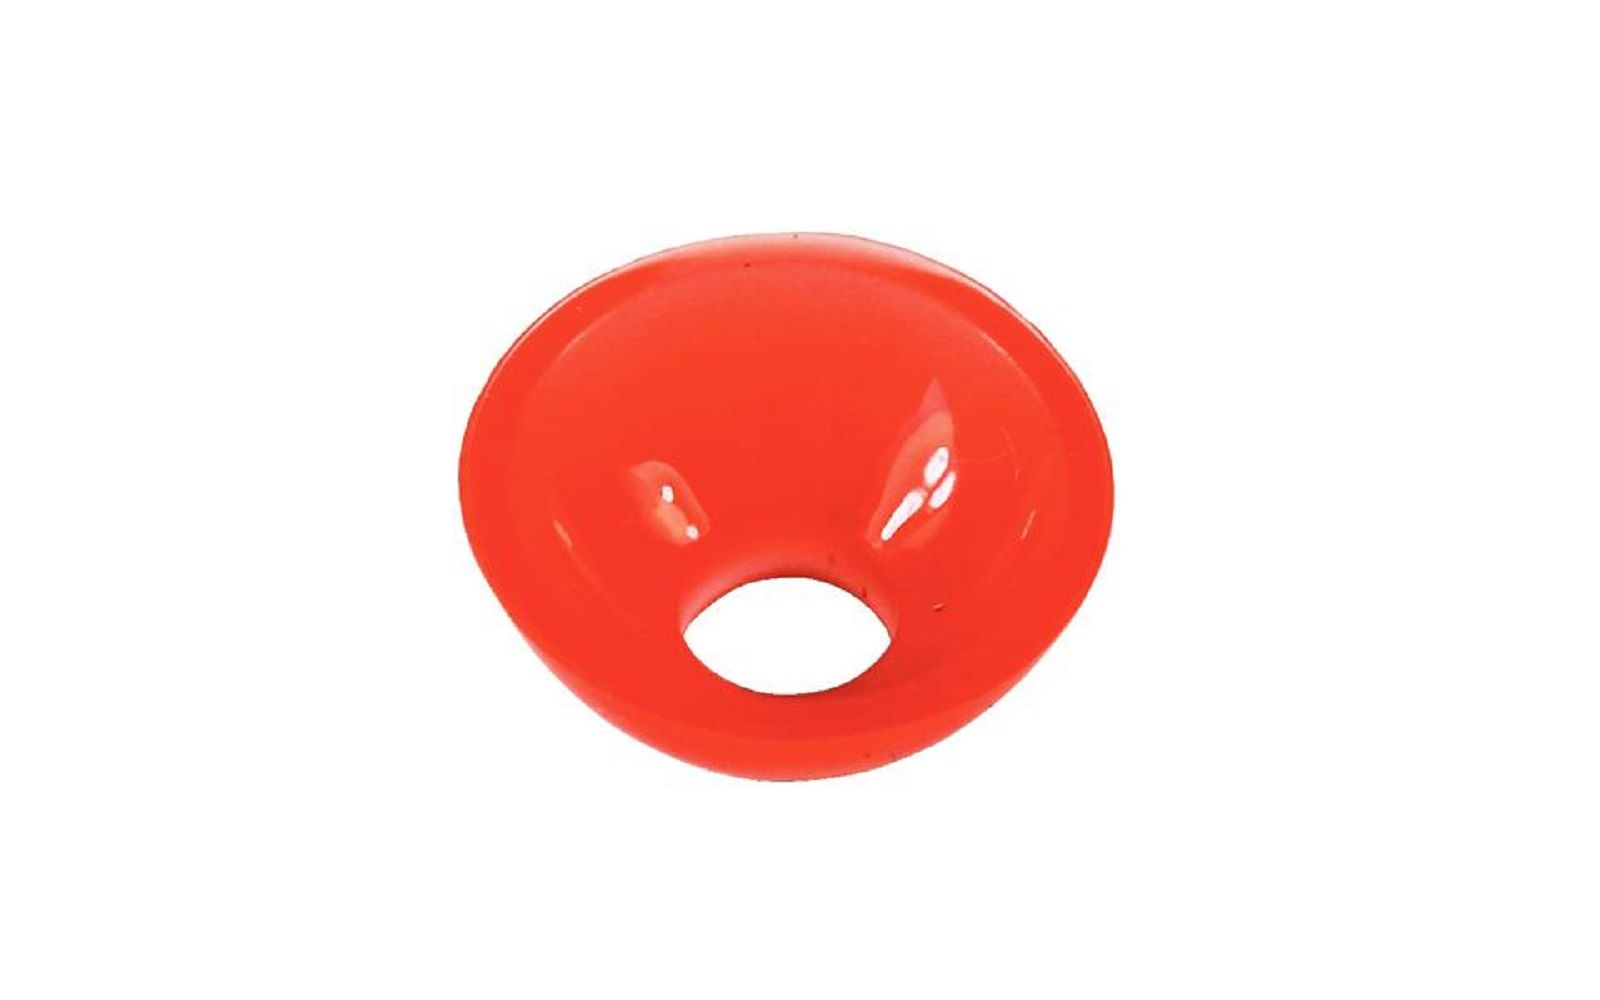 Celalux® 3 rubber light shield – 5/pkg